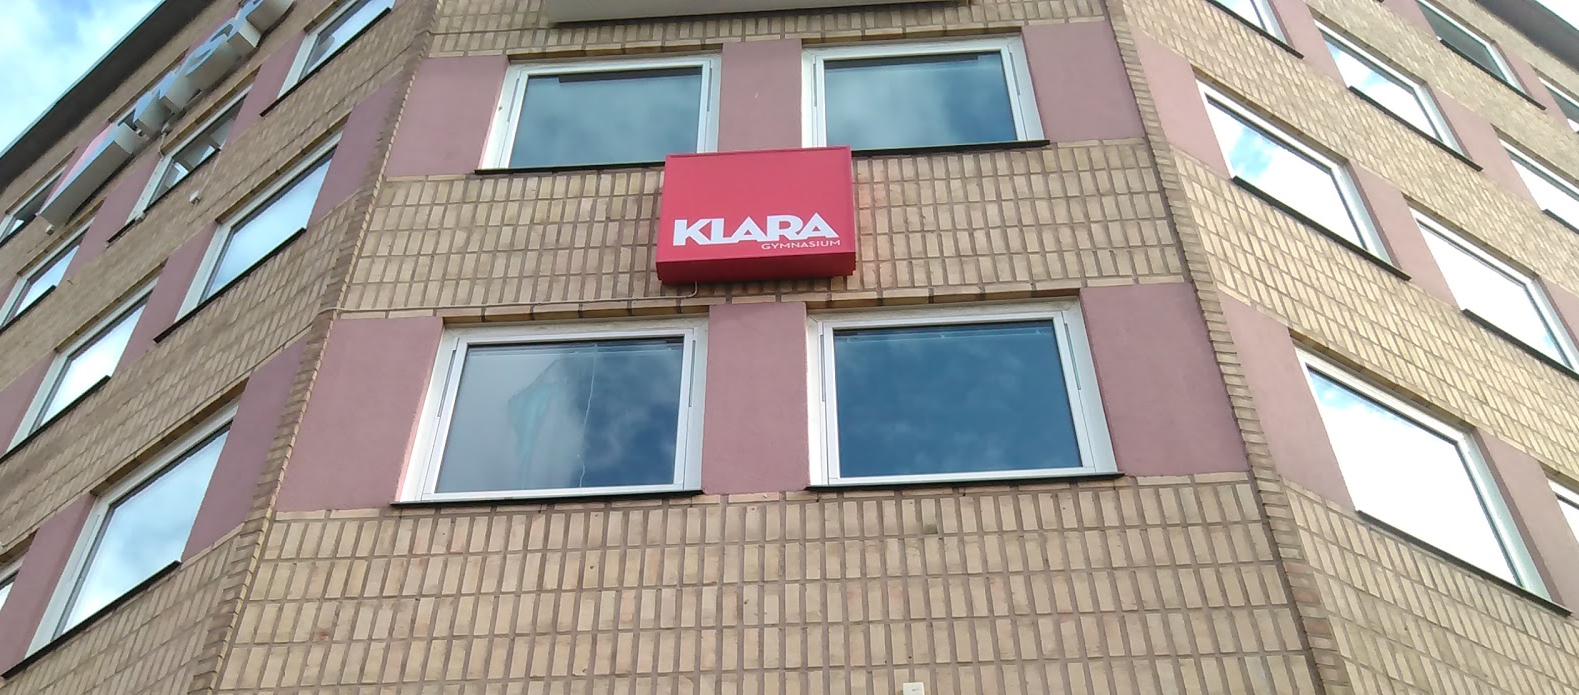 Klara Teoretiska Gymnasium Linköping i Linköping